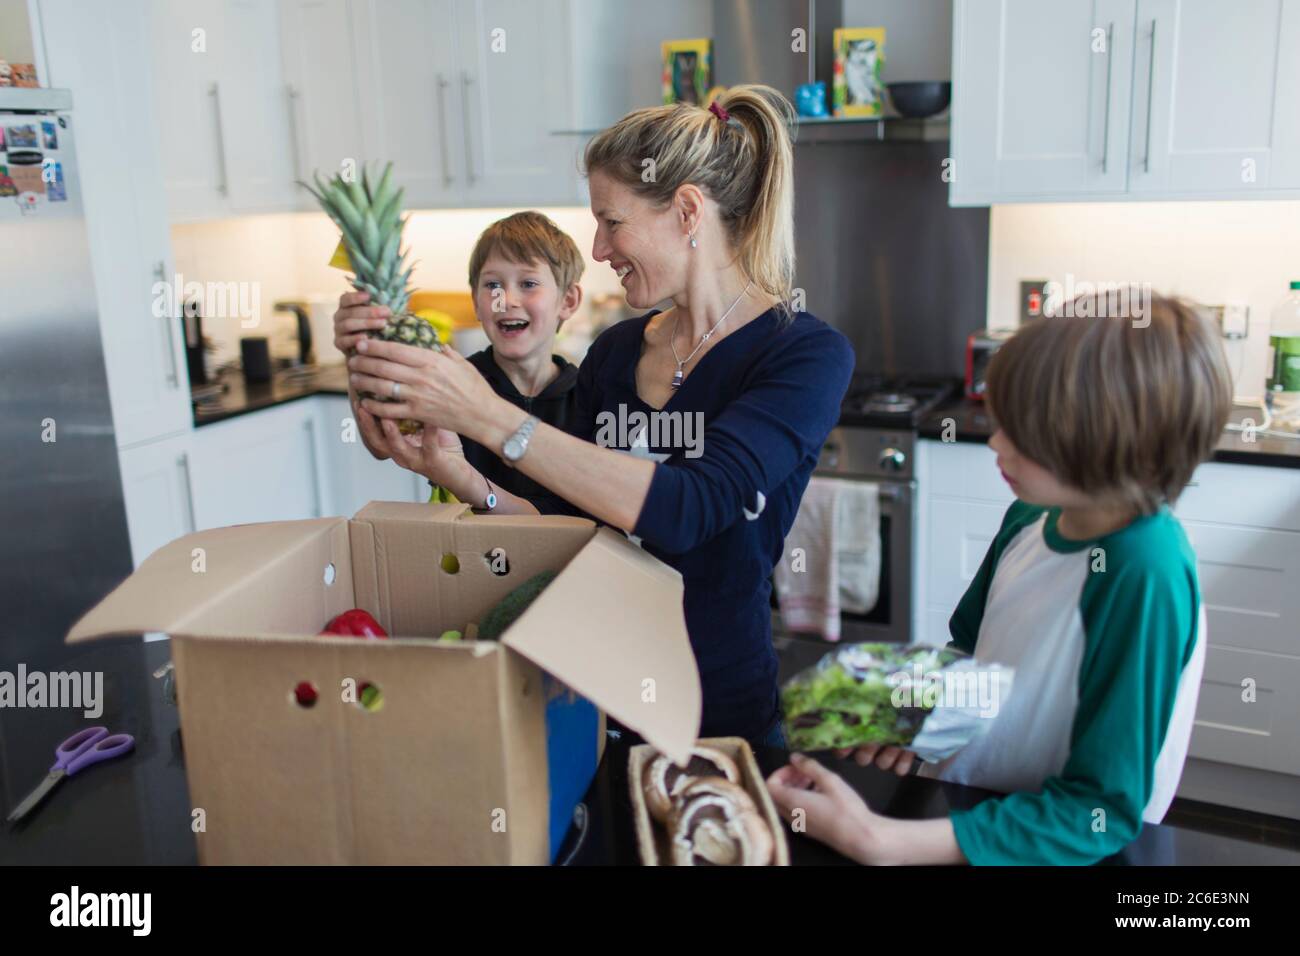 Glückliche Mutter und Söhne entladen frische Produkte aus der Box in der Küche Stockfoto